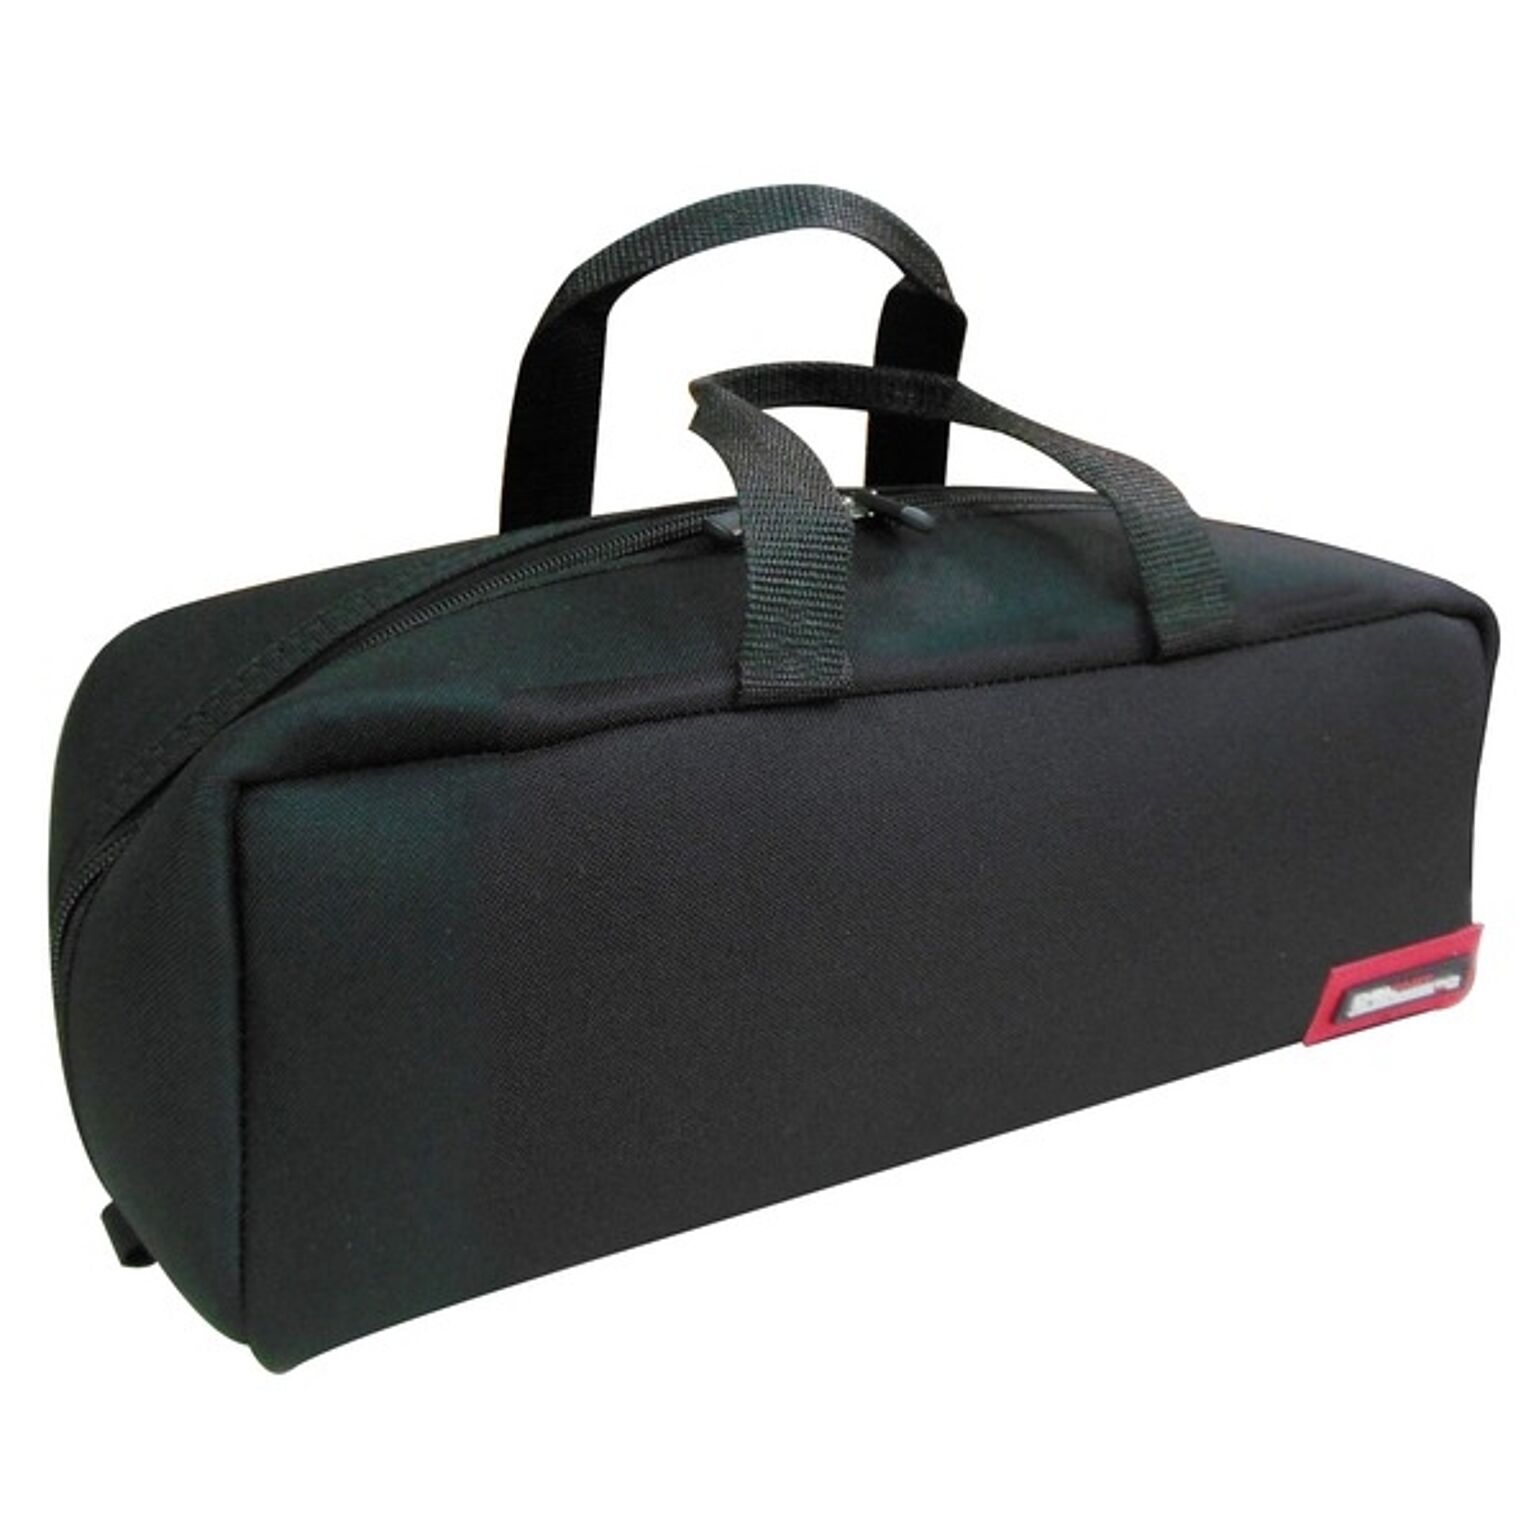 （業務用20個セット）DBLTACT トレジャーボックス（作業バッグ/手提げ鞄） Mサイズ 自立型/軽量 DTQ-M-BK ブラック（黒） 〔収納用具〕【×20セット】【送料無料】